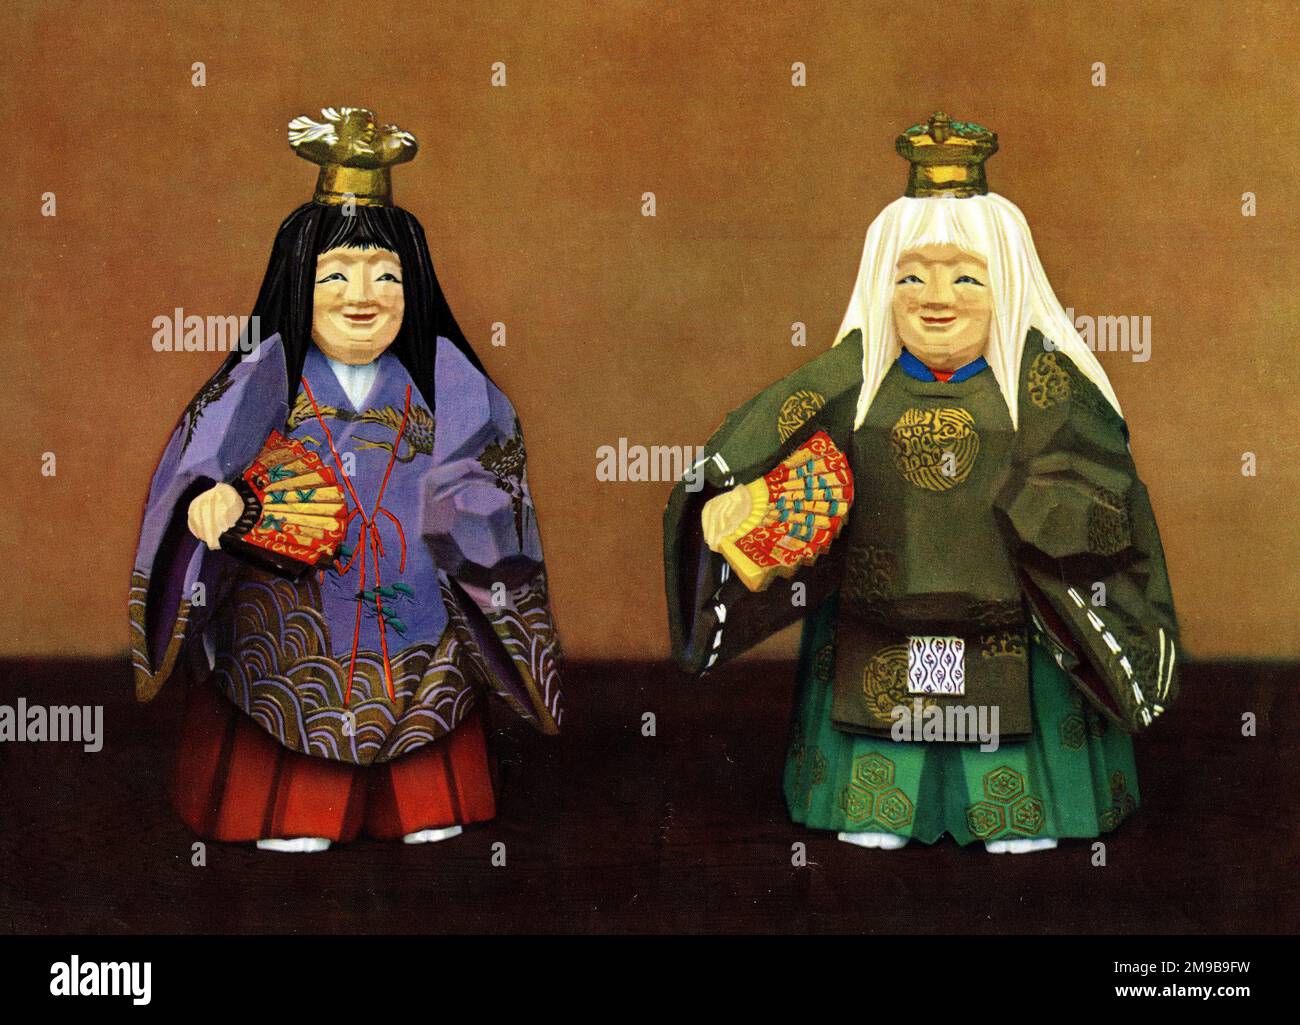 Poupées Nara japonaises - poupées sculptées en bois utilisées à des fins décoratives lors d'un festival du sanctuaire de Kasuga à l'époque de l'empereur Sutoku en 1137. On voit ici des poupées représentant des figures de la pièce Noh, Tsurukame (tsuru signifiant stok, kame signifiant tortue, les deux représentant la longévité). Banque D'Images